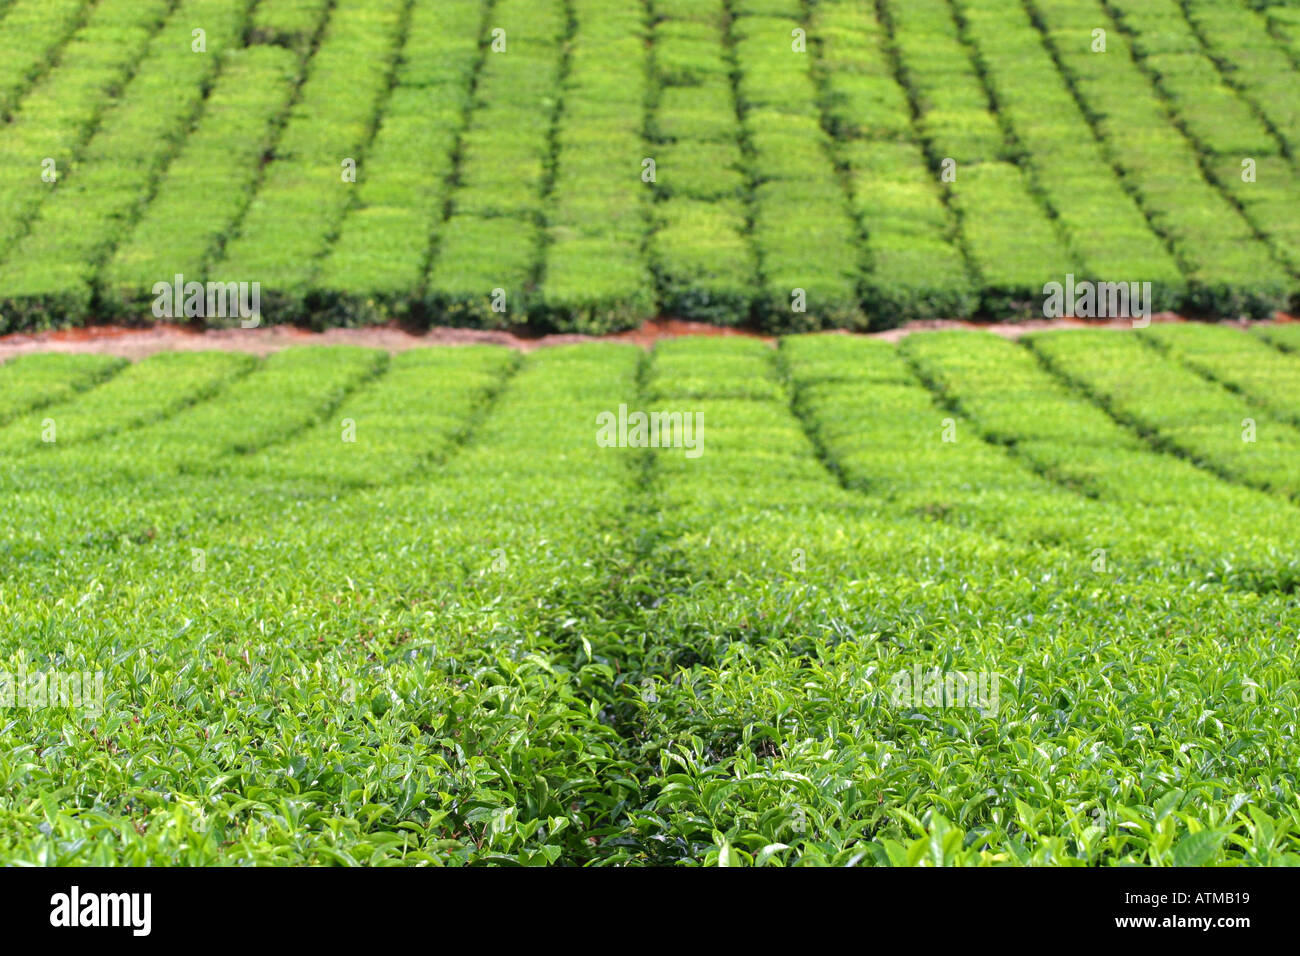 Lush Green Field Of Growing Tea In An Australian Tea Plantation